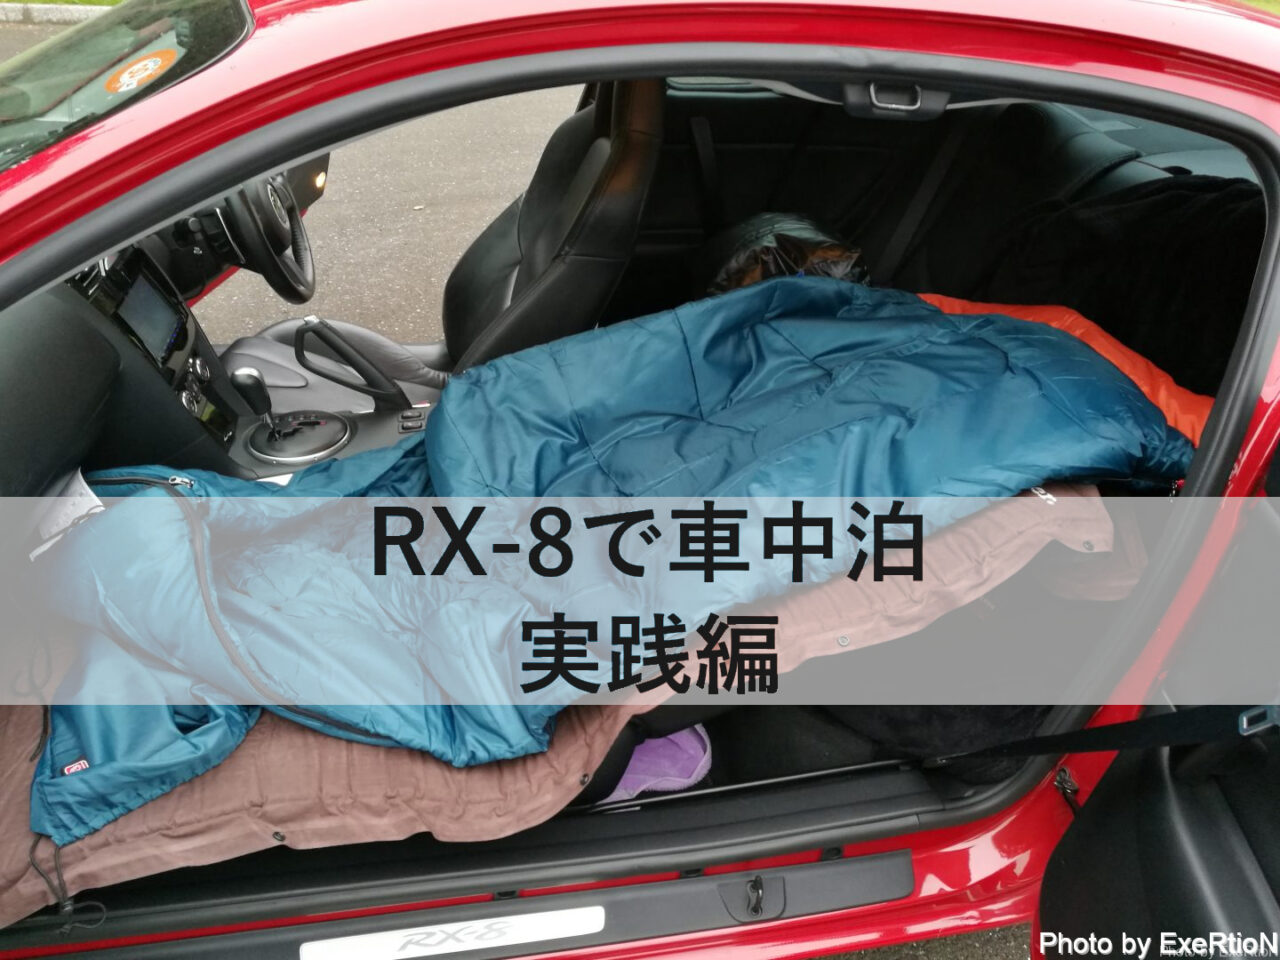 Rx 8で車中泊は出来るのか Part2 実践編 Exertionのrx 8と旅行とウェアラブルを愛するブログ